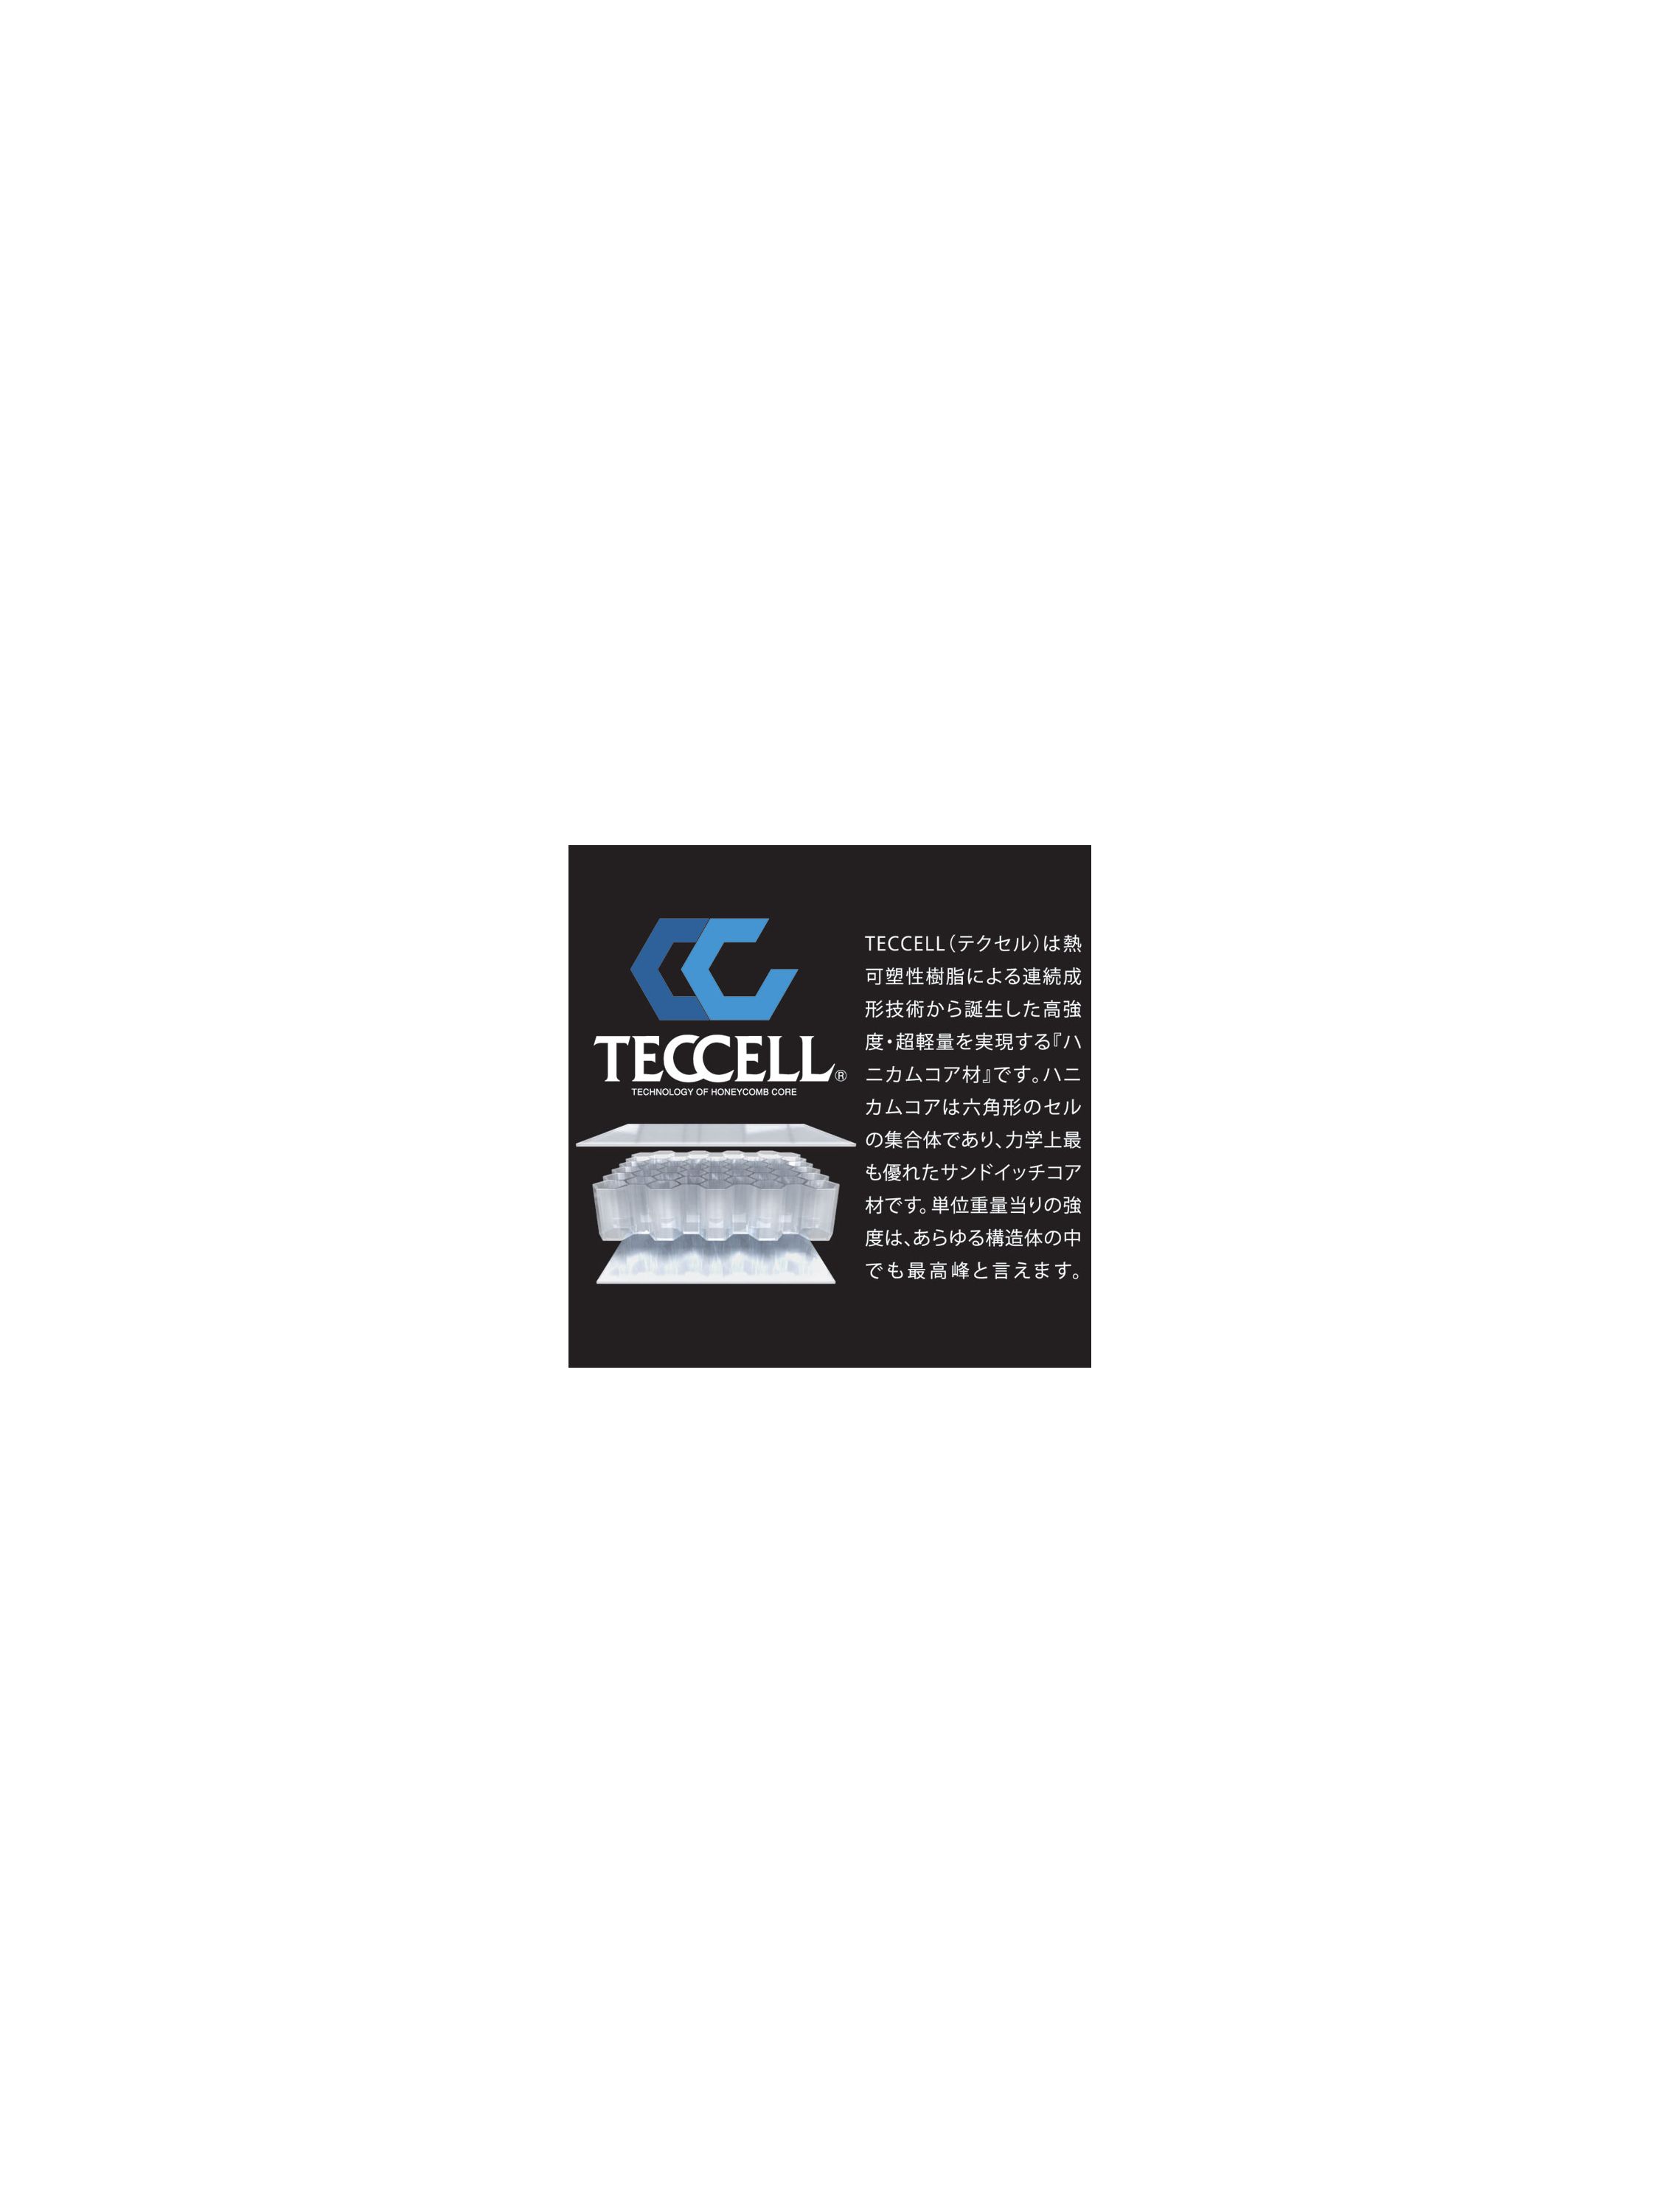 タイチ公式通販】TRV063 TECCELL チェストプロテクター:ボタンタイプ【MEN'S】| TAICHI